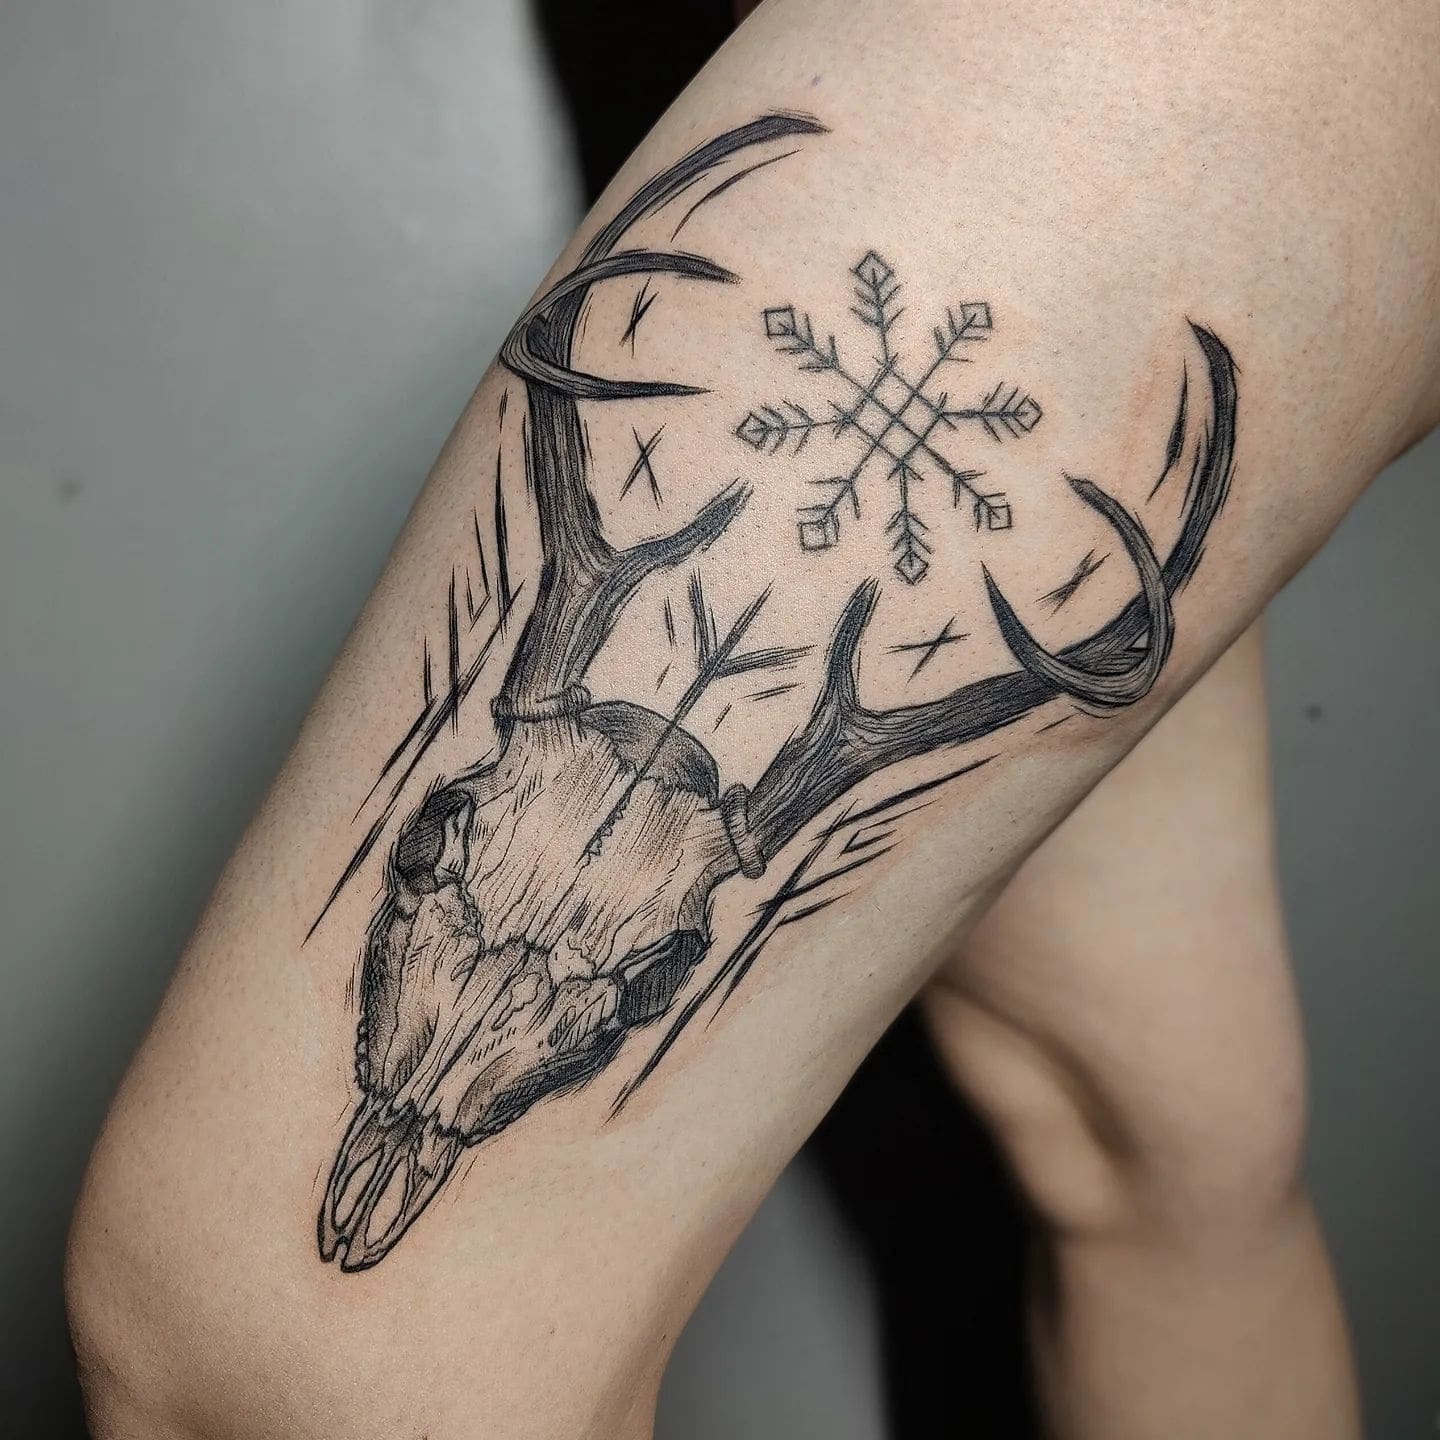 Plemienny tatuaż czaszki jelenia